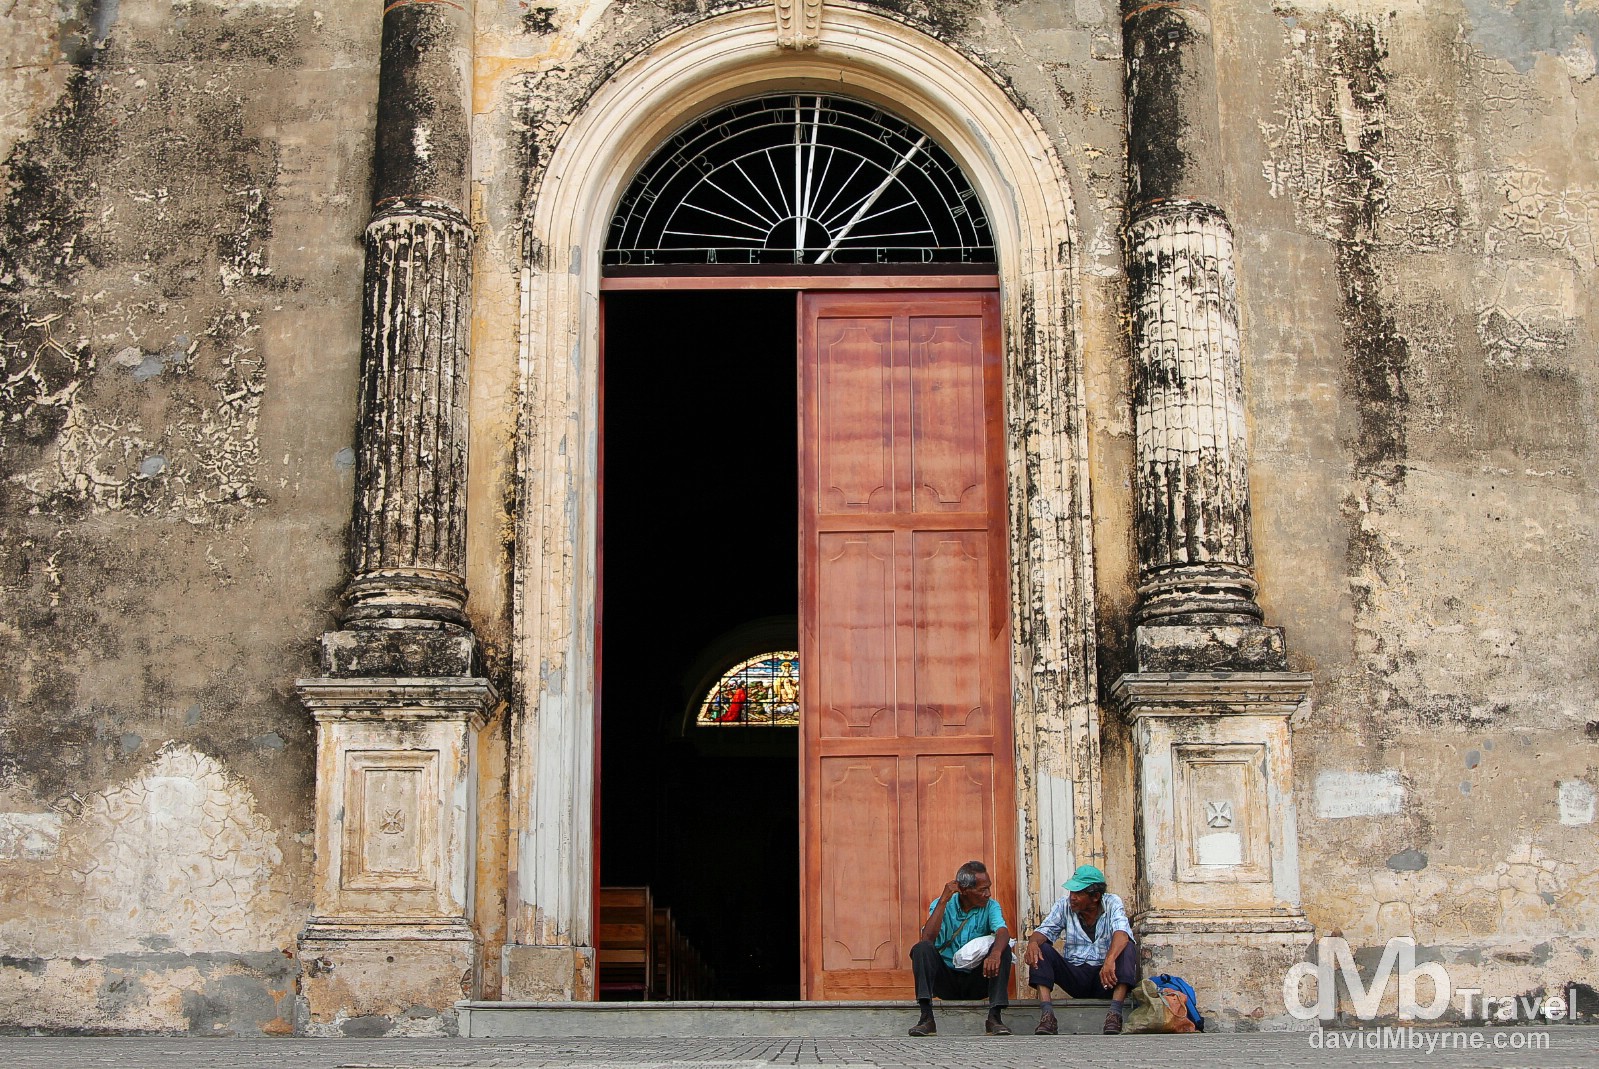 Sitting outside the 1539 Iglesia de la Merced, Granada, Nicaragua. June 18th 2013.